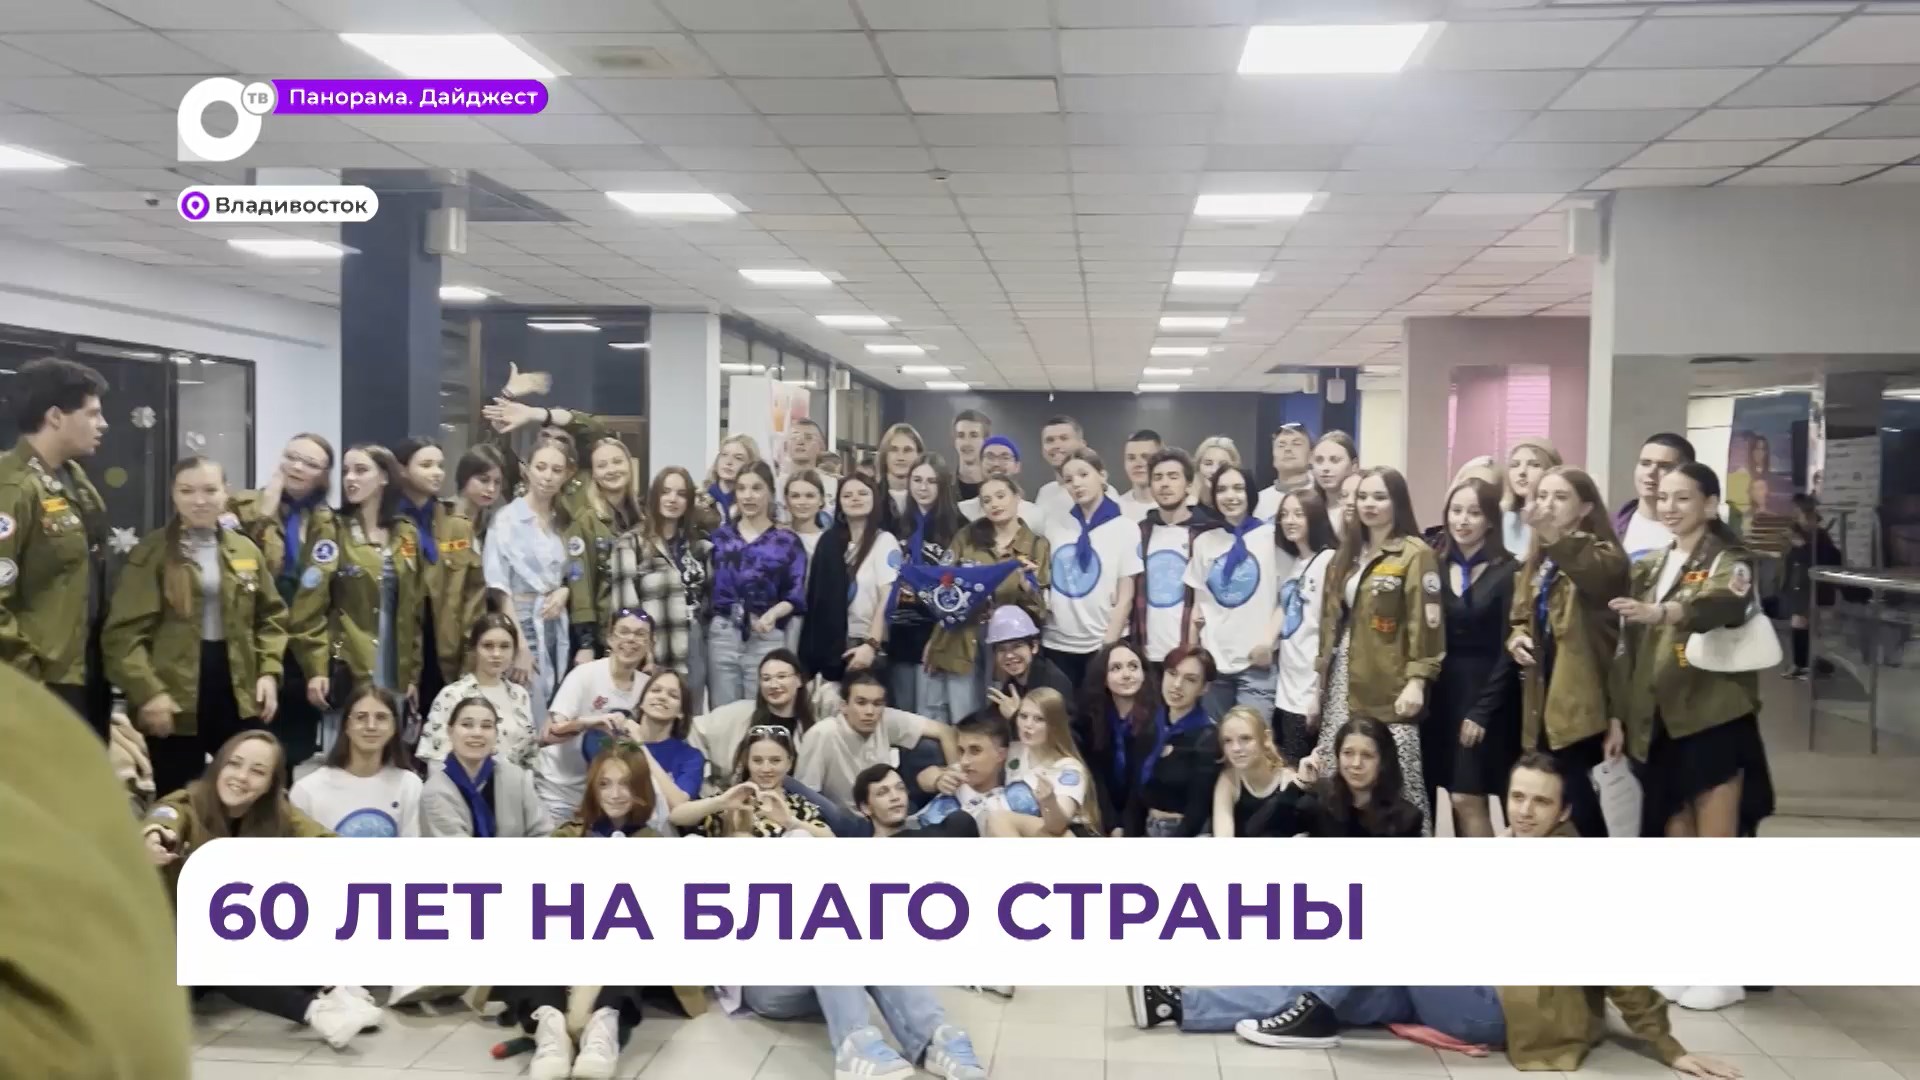 Приморский краевой студенческий отряд в этом году отпразднует свой 60-летний юбилей